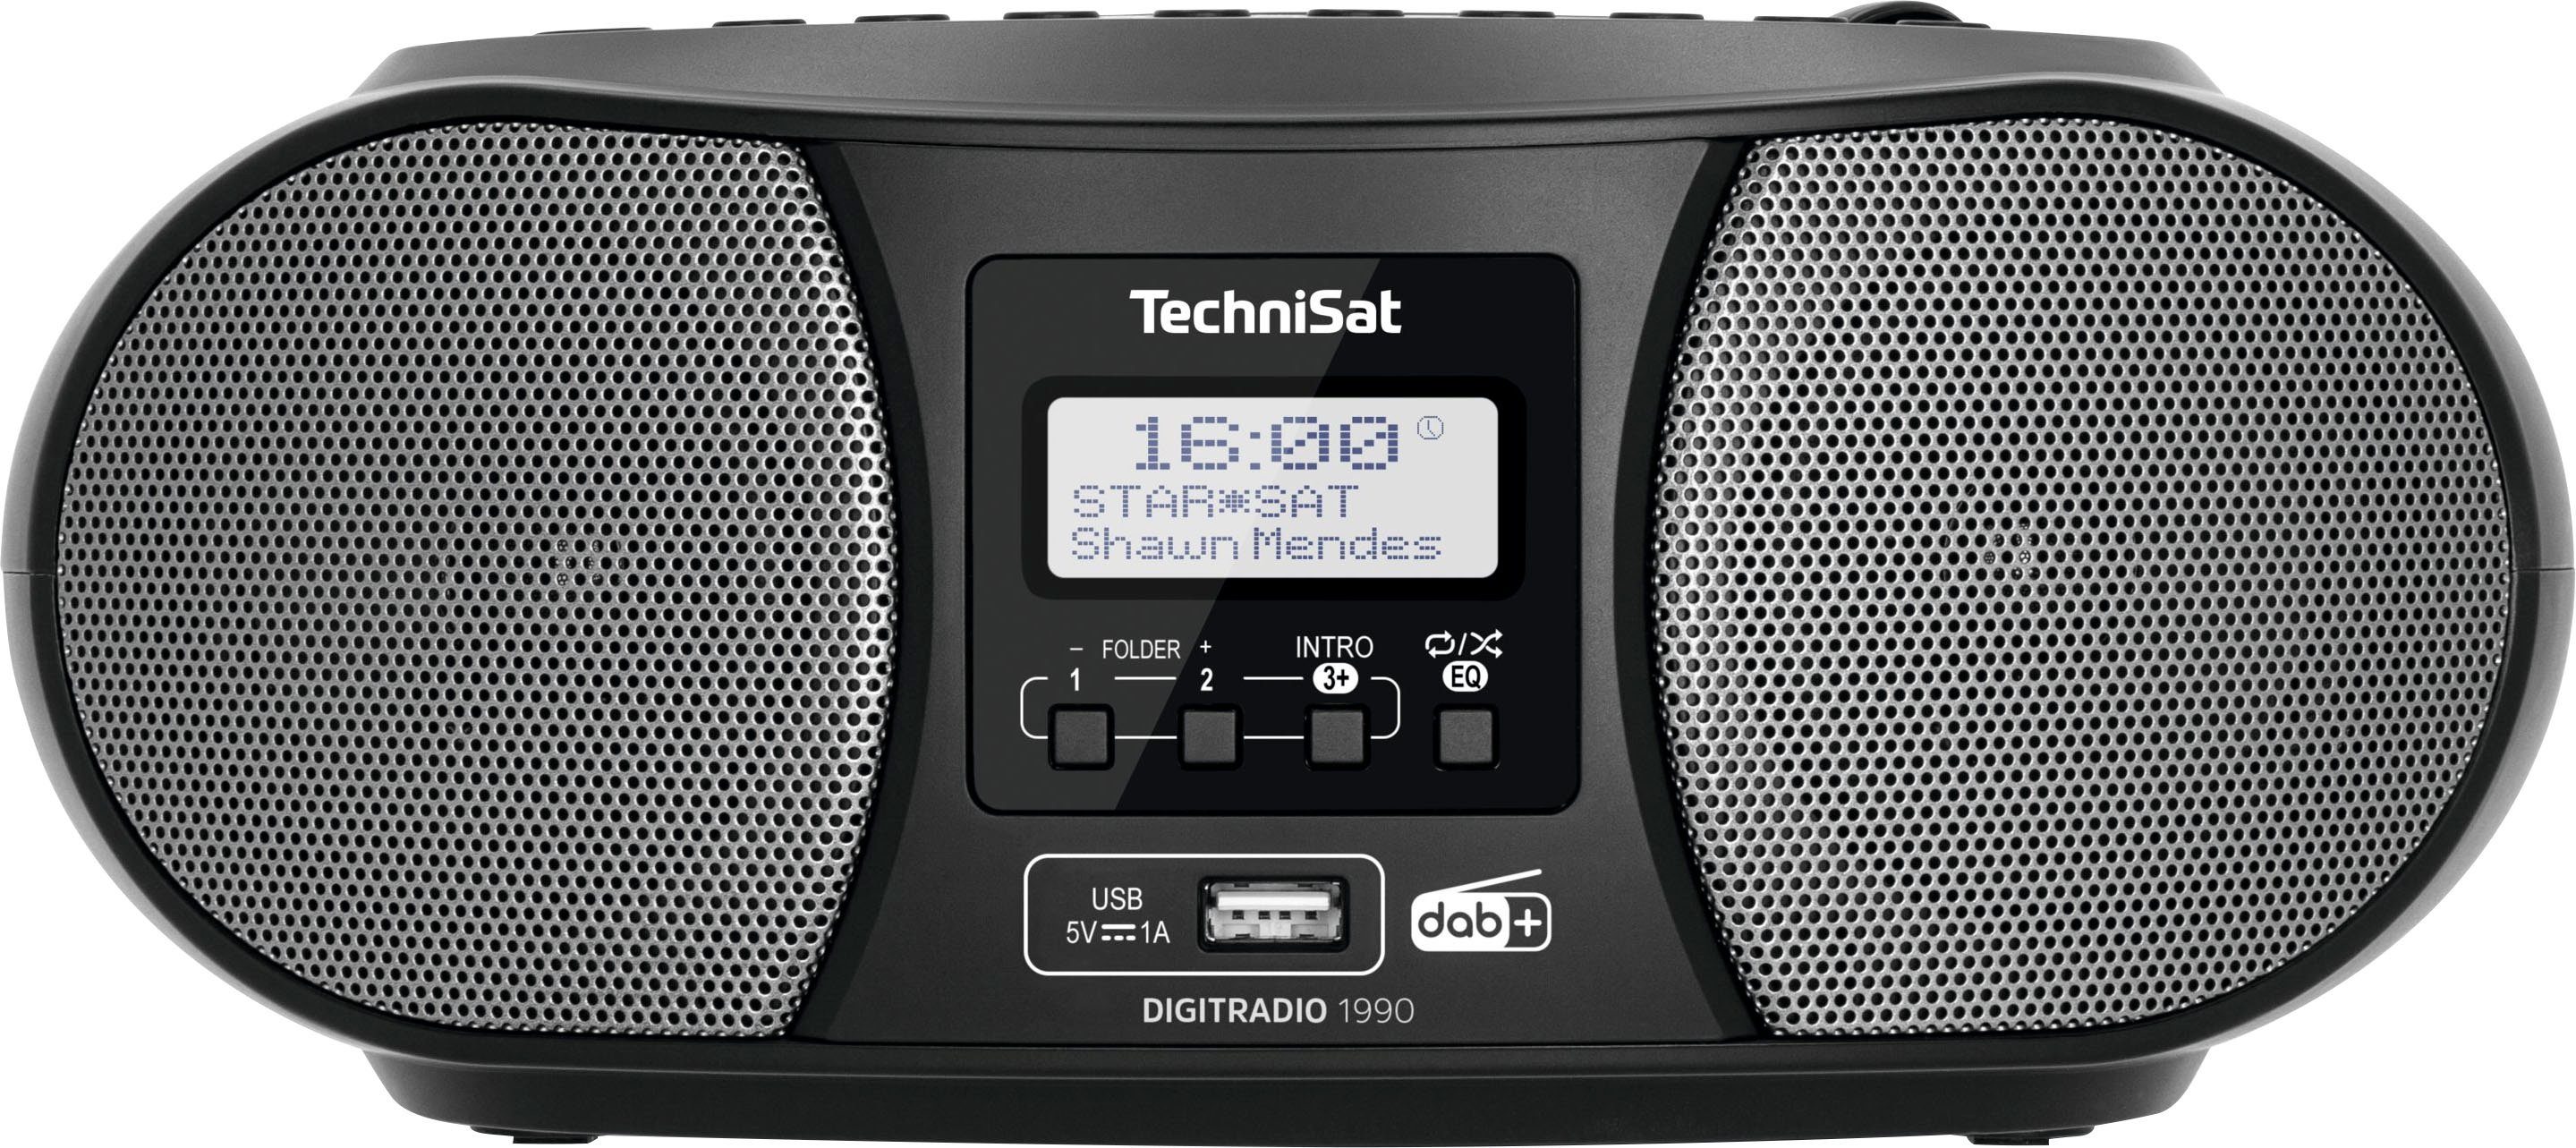 DAB+, (Digitalradio (DAB), möglich) FM-Tuner, schwarz USB, Boombox Digitradio UKW, Batteriebetrieb Stereo- mit CD-Player, 1990 TechniSat Bluetooth,